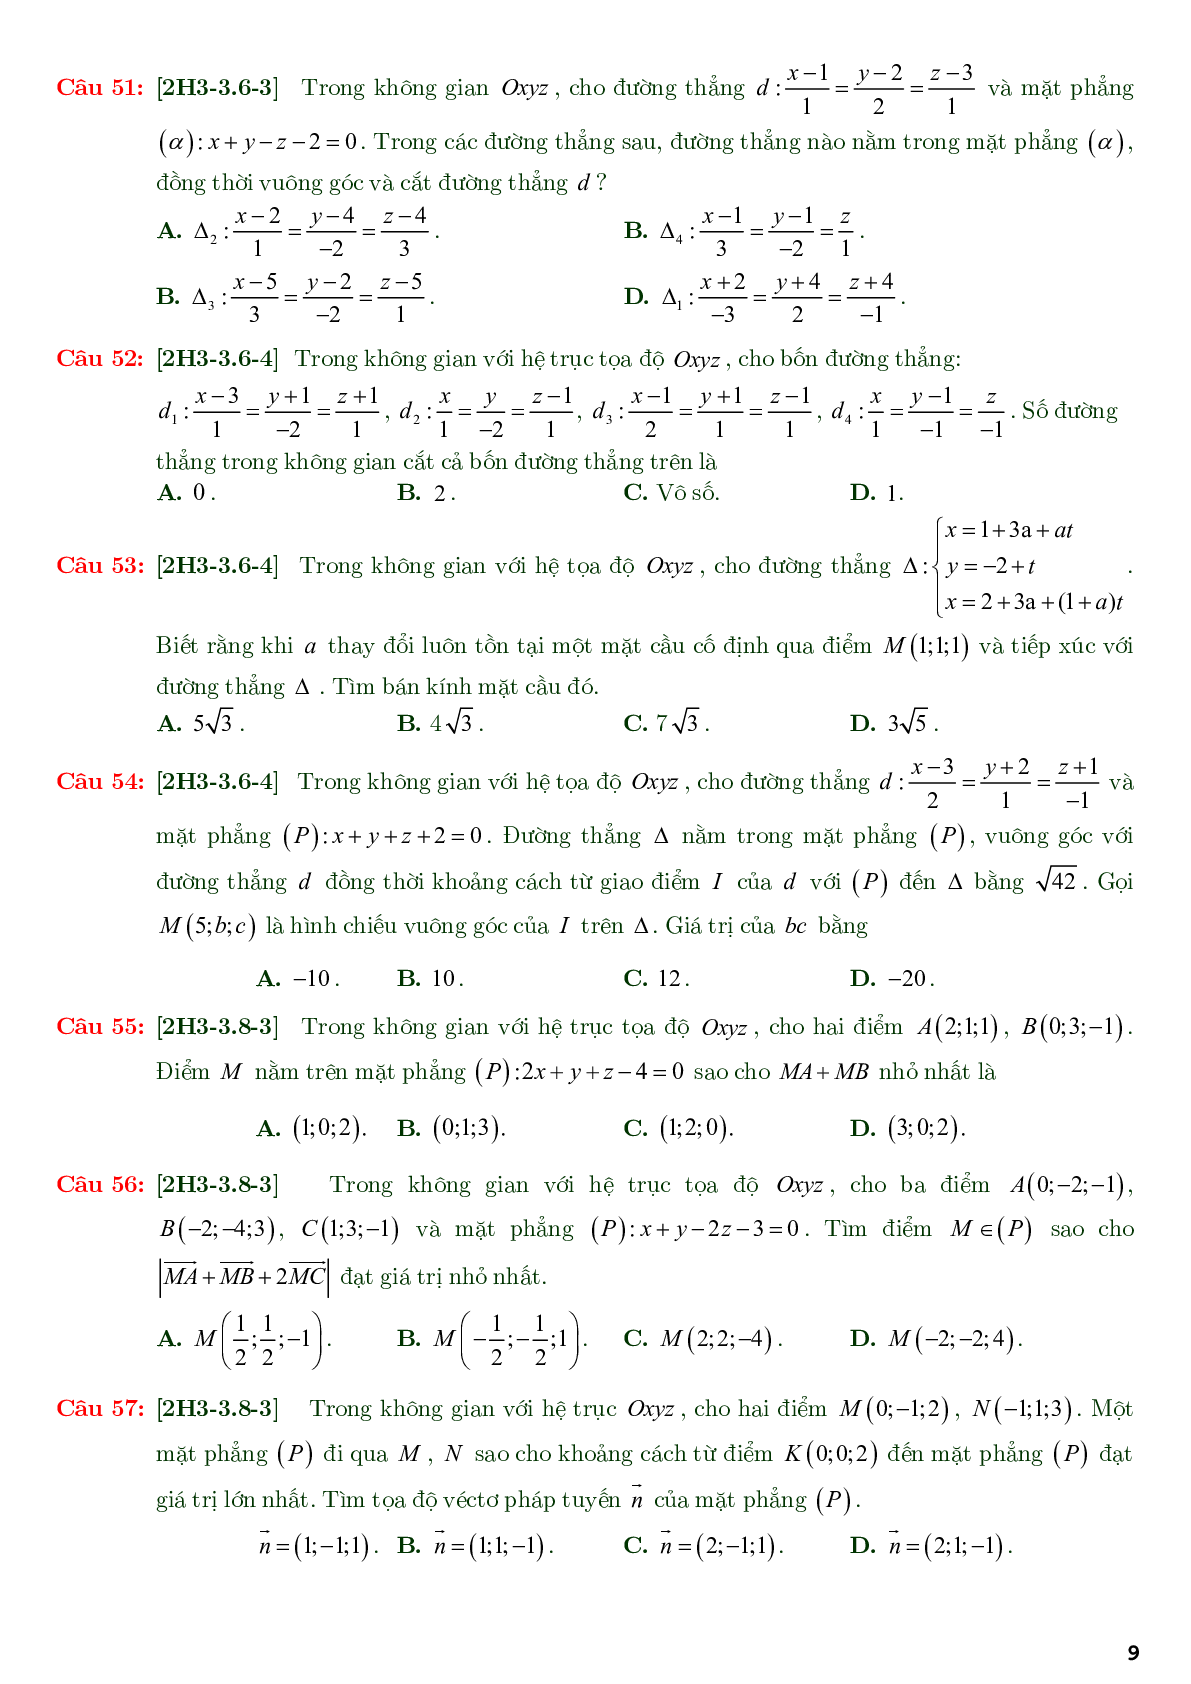 86 câu trắc nghiệm về phương trình đường thẳng nâng cao - có đáp án chi tiết (trang 9)